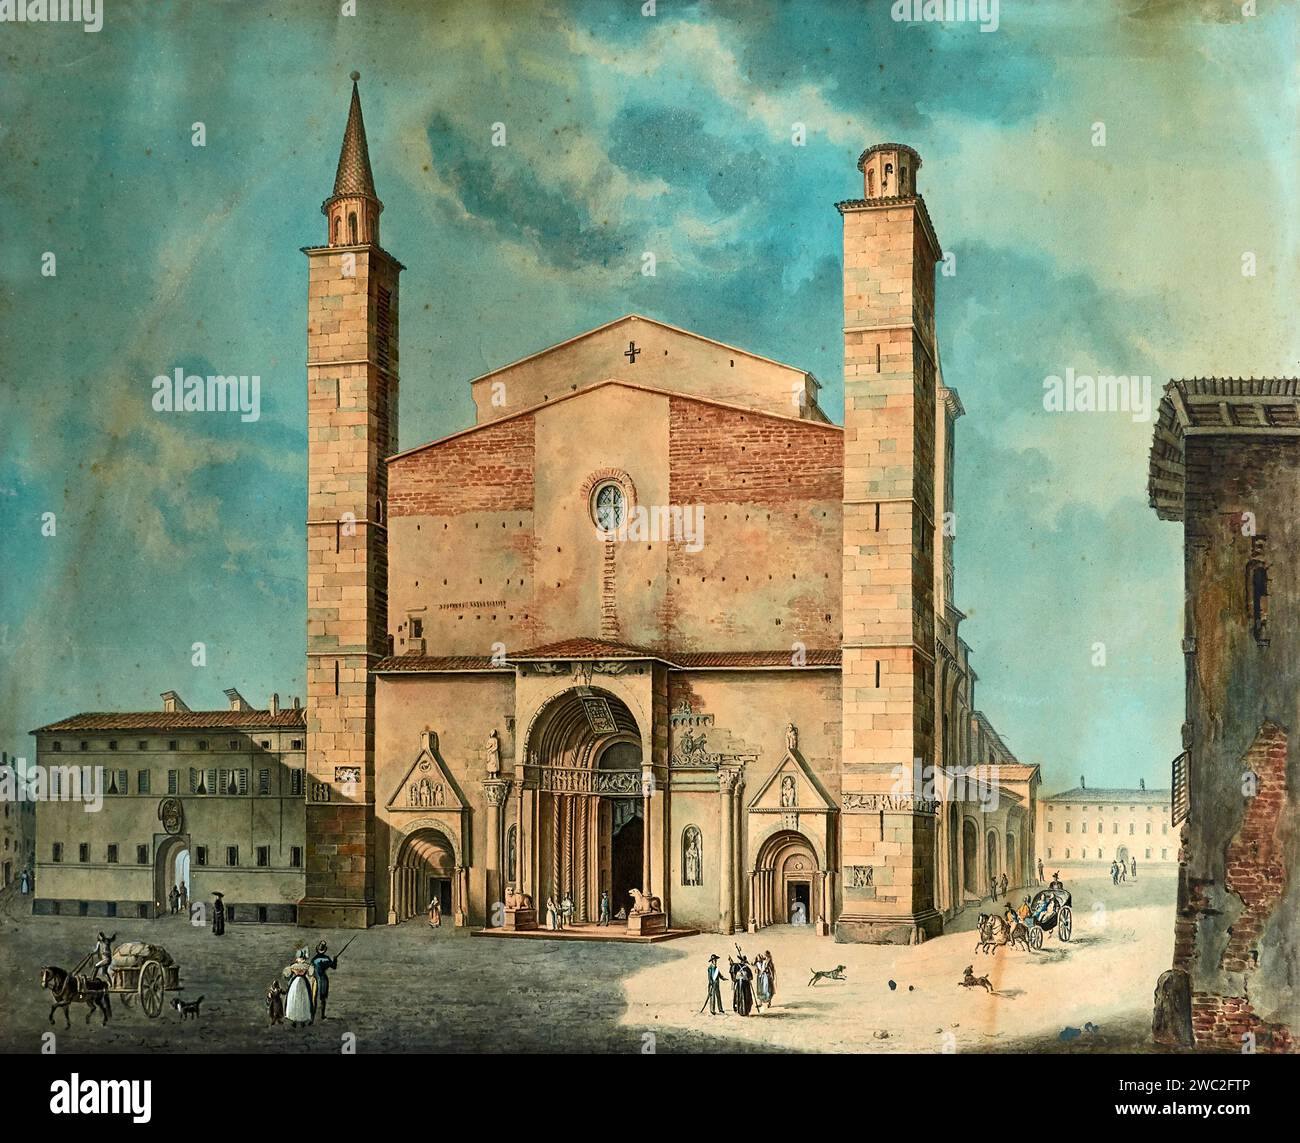 La Piazza del Duomo di Borgo San Donnino - olio su tela - Girolamo Magnani - 1846 - Fidenza (Pr), Museo del Duomo Foto Stock